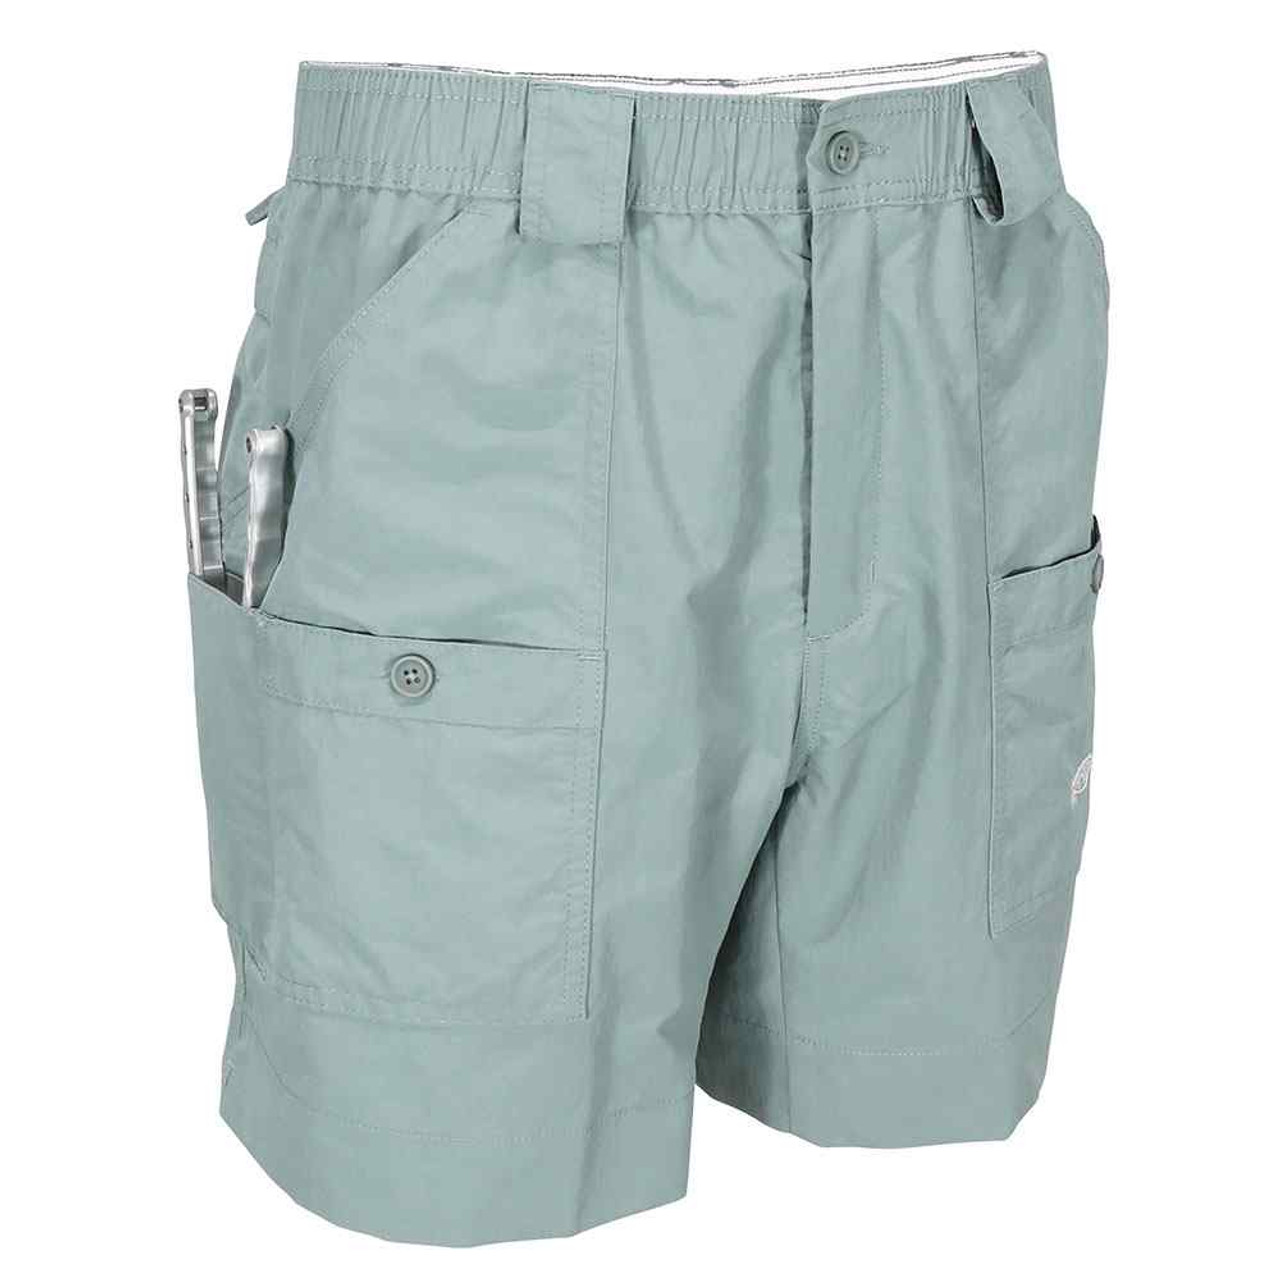 AFTCO Original Fishing Shorts (Navy - 36)